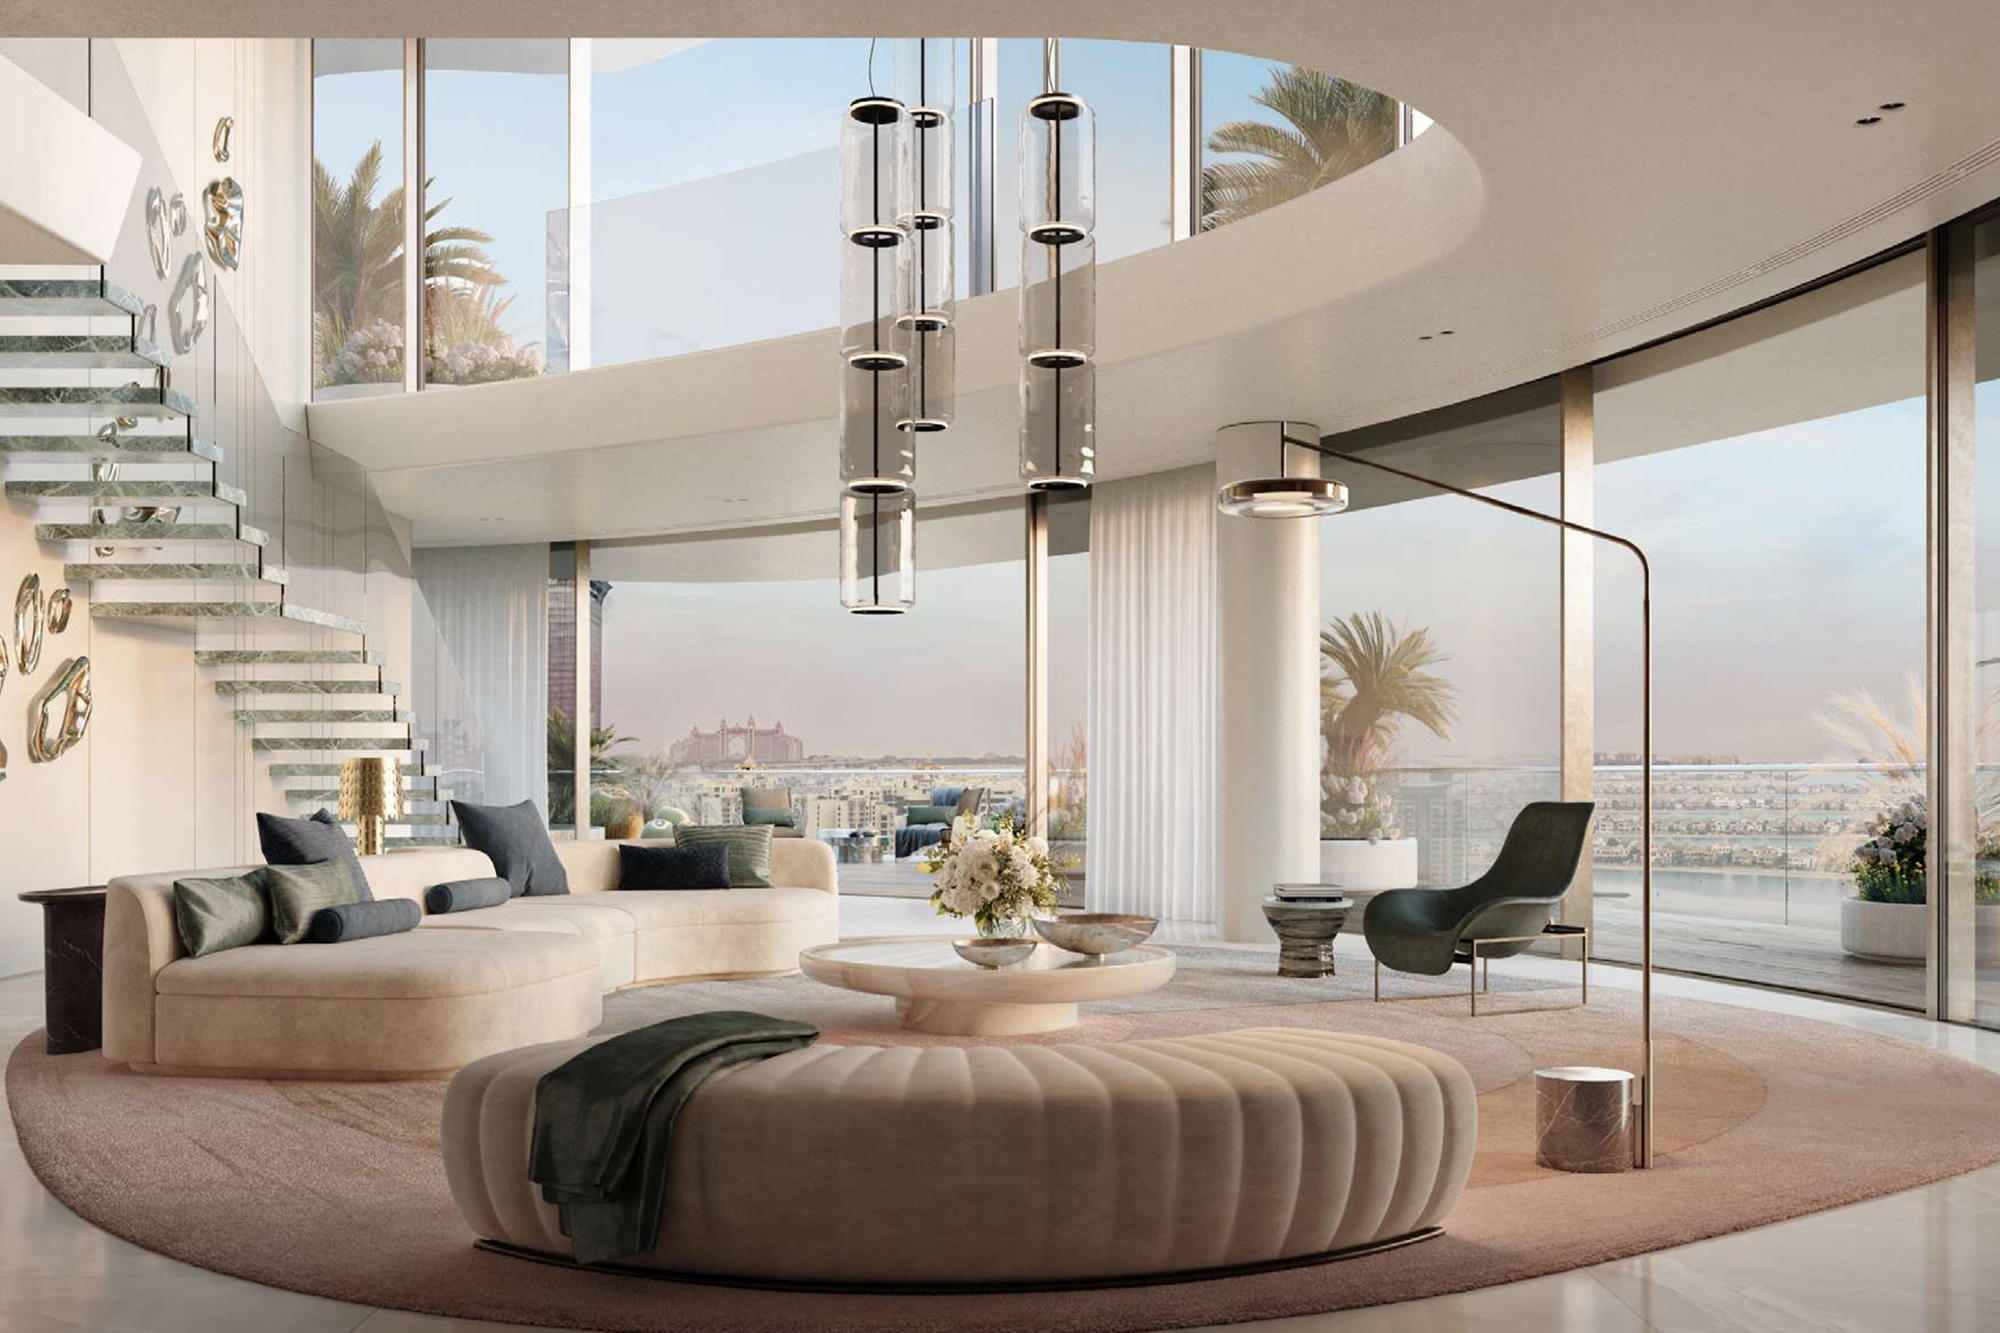 Căn penthouse bán với giá kỷ lục hơn 3.200 tỉ đồng dù chưa xây xong được  - Ảnh 4.